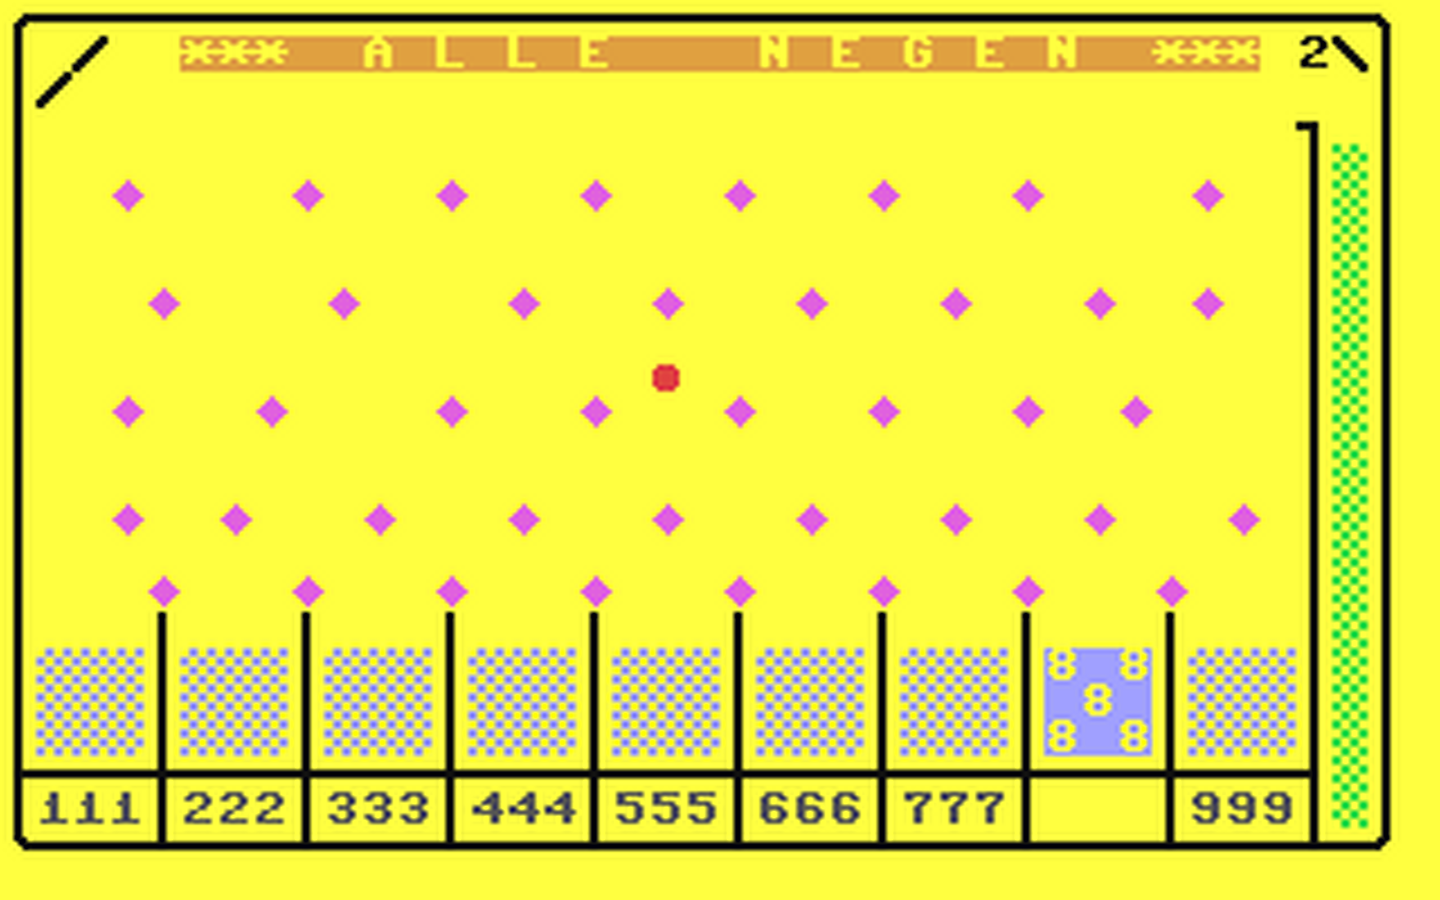 C64 GameBase Alle_Negen Courbois_Software 1983